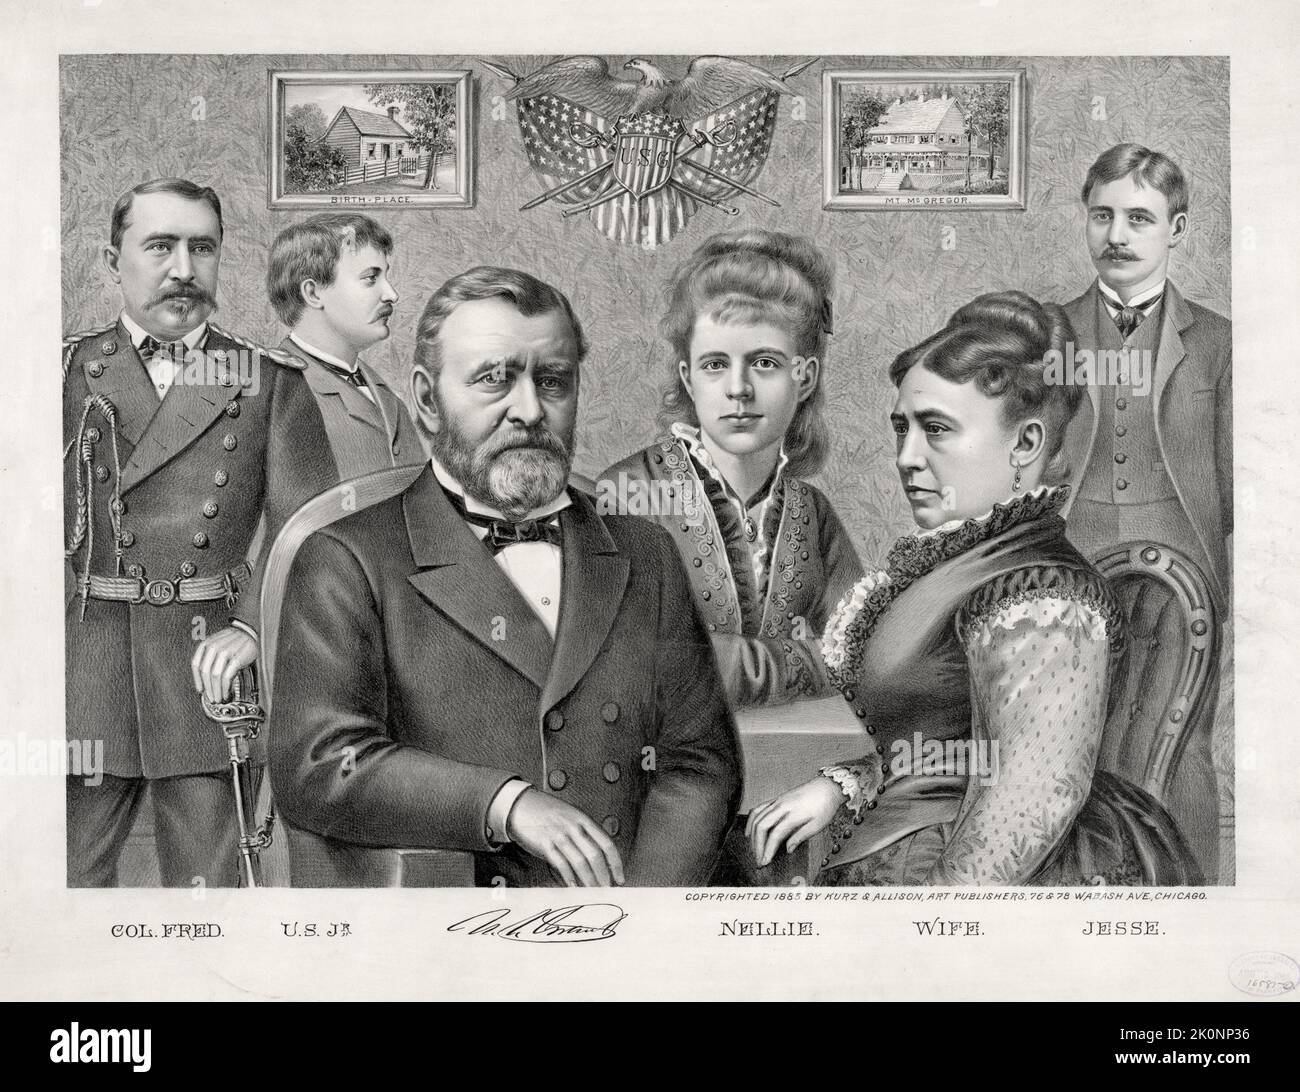 Un dessin du président Ulysses Grant et de sa famille. À l'image se trouvent ses fils, le général Frederick Grant, Ulysses Junior et Jesse, sa fille Nellie et sa femme, la première dame Julia Dent Grant Banque D'Images